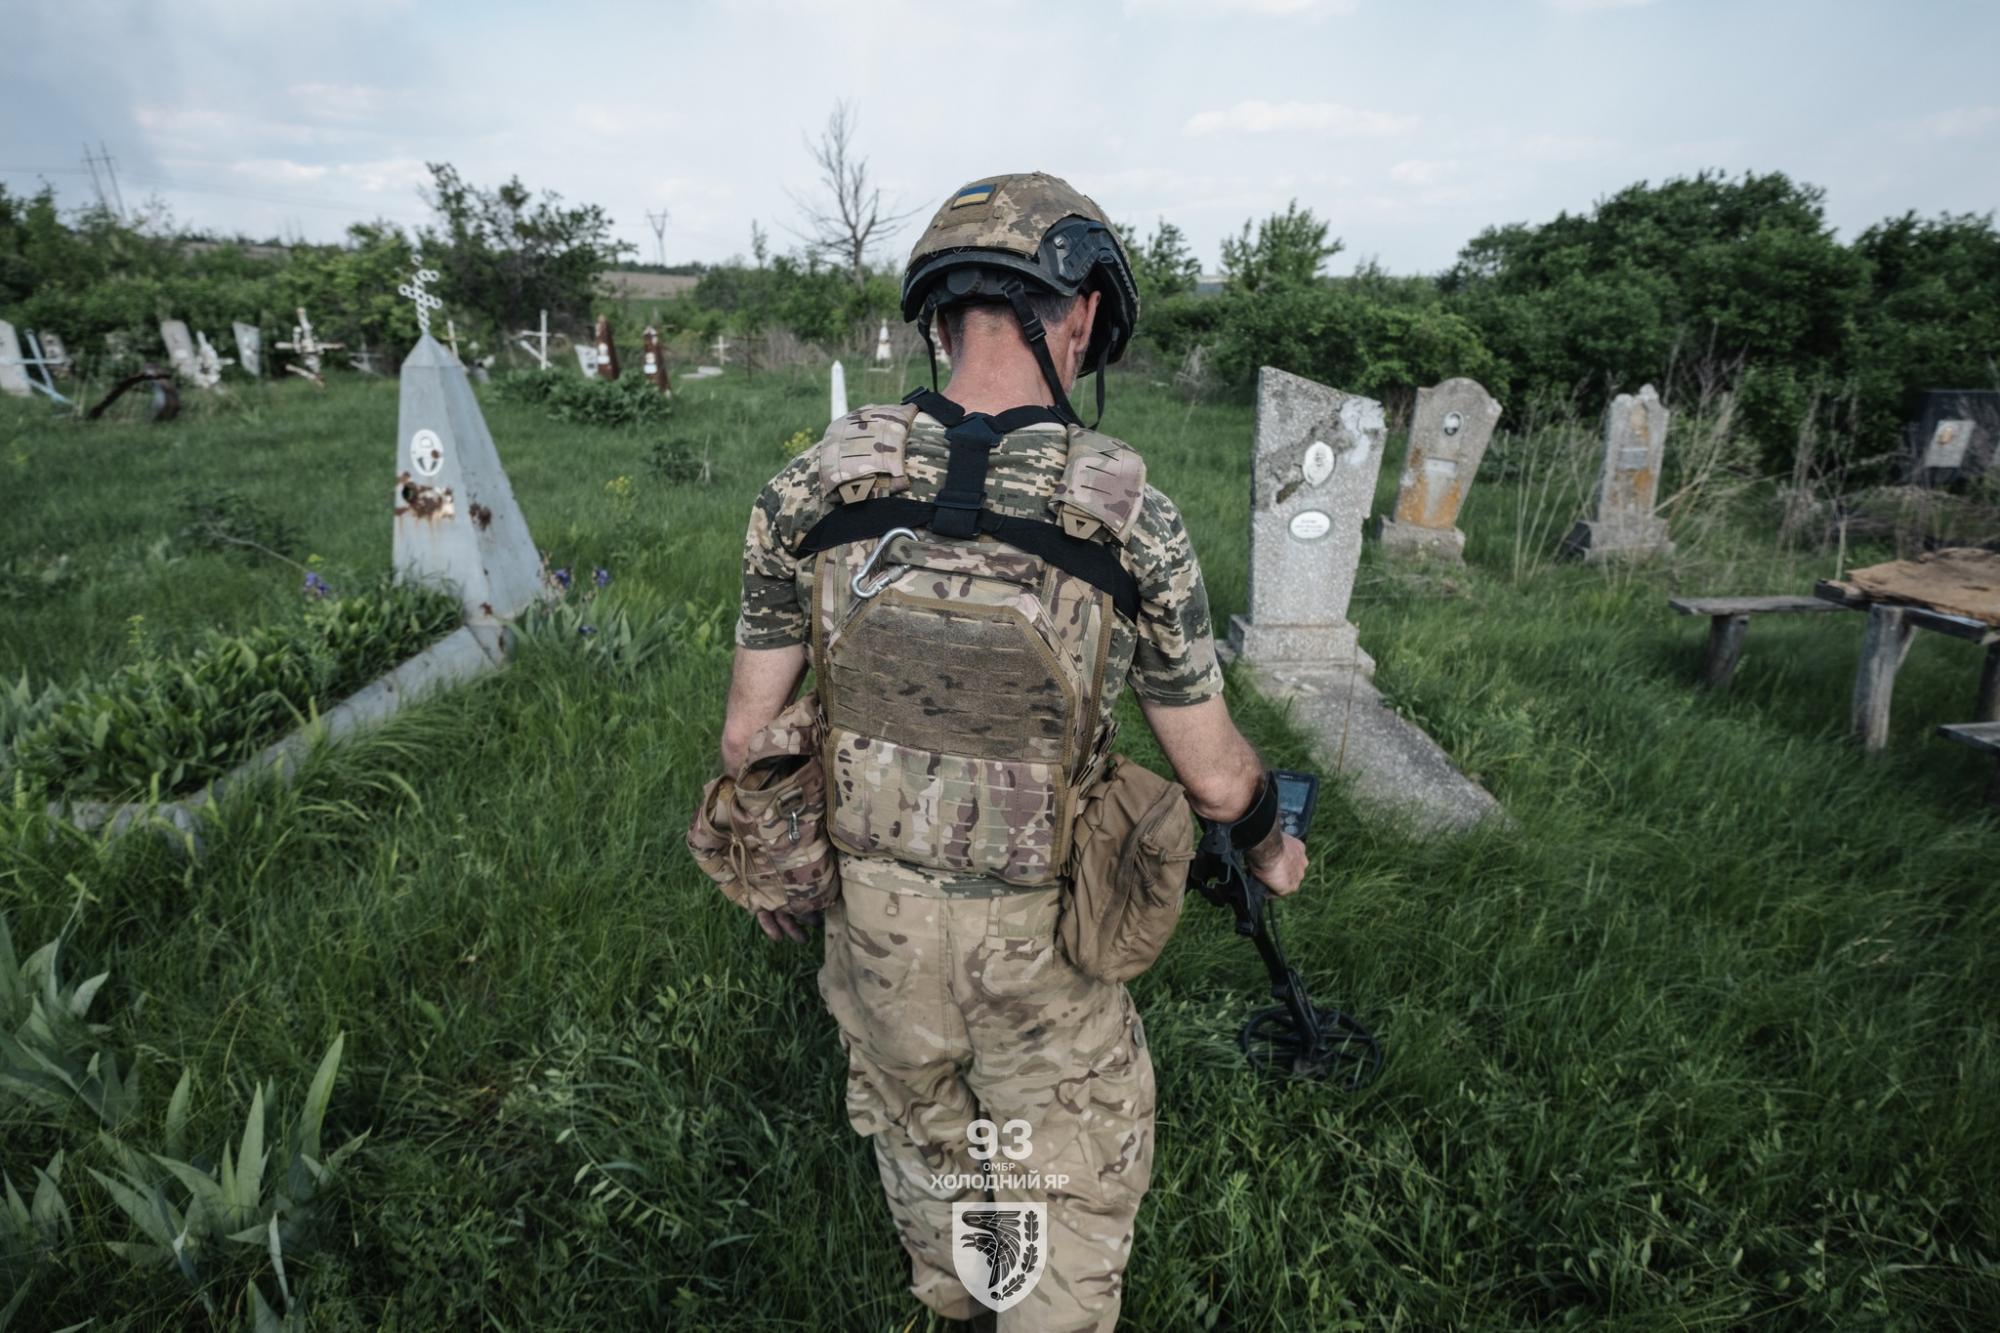 "Знадобляться сотні років". 93 бригада показала, як розміновують Україну: фото